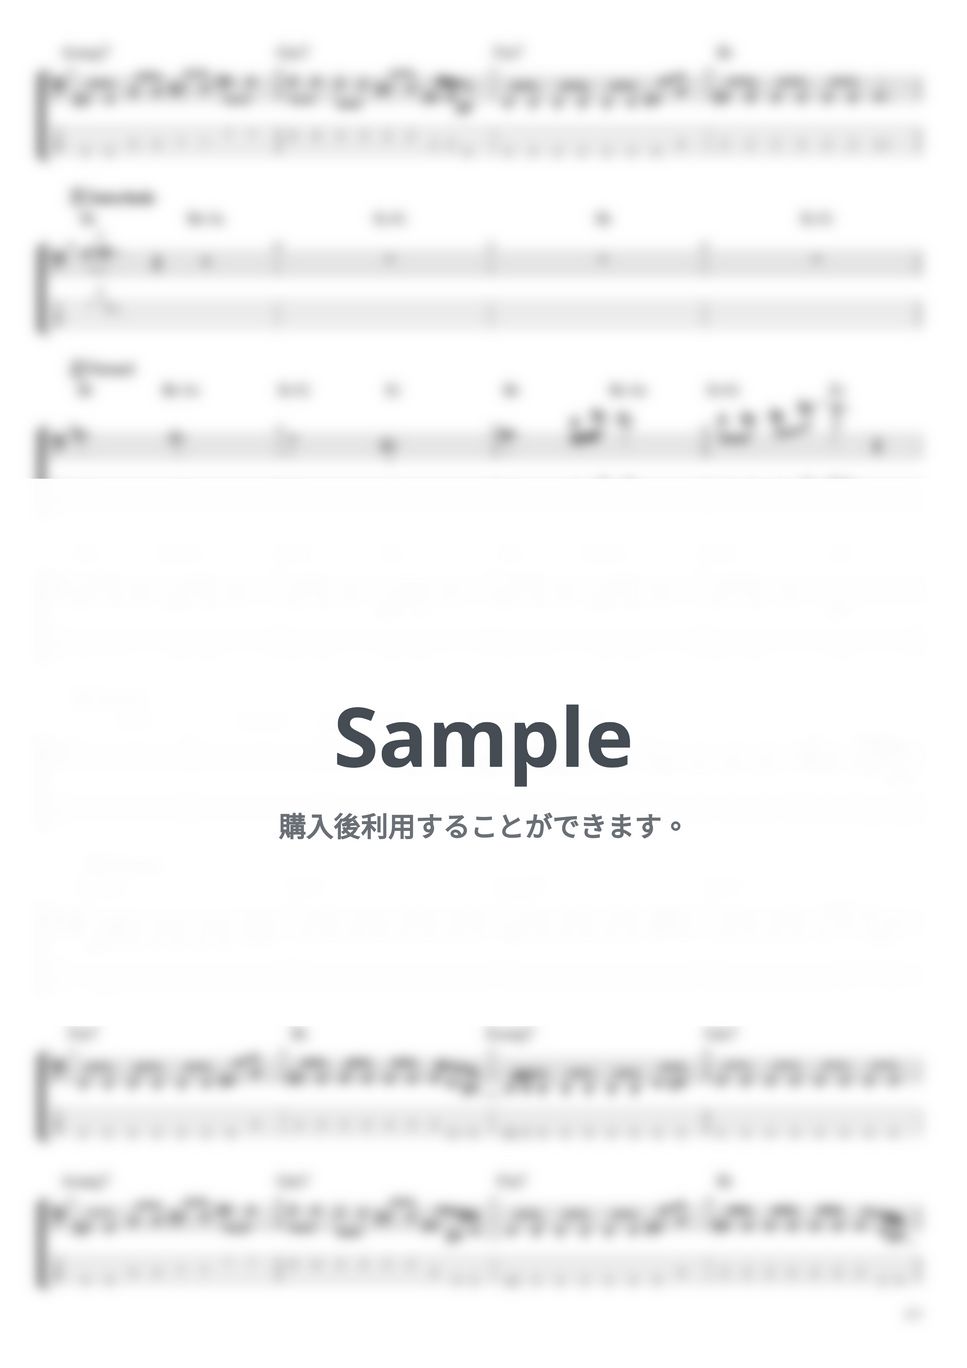 東京事変 - 獣の理 (ベース Tab譜 4弦) by T's bass score